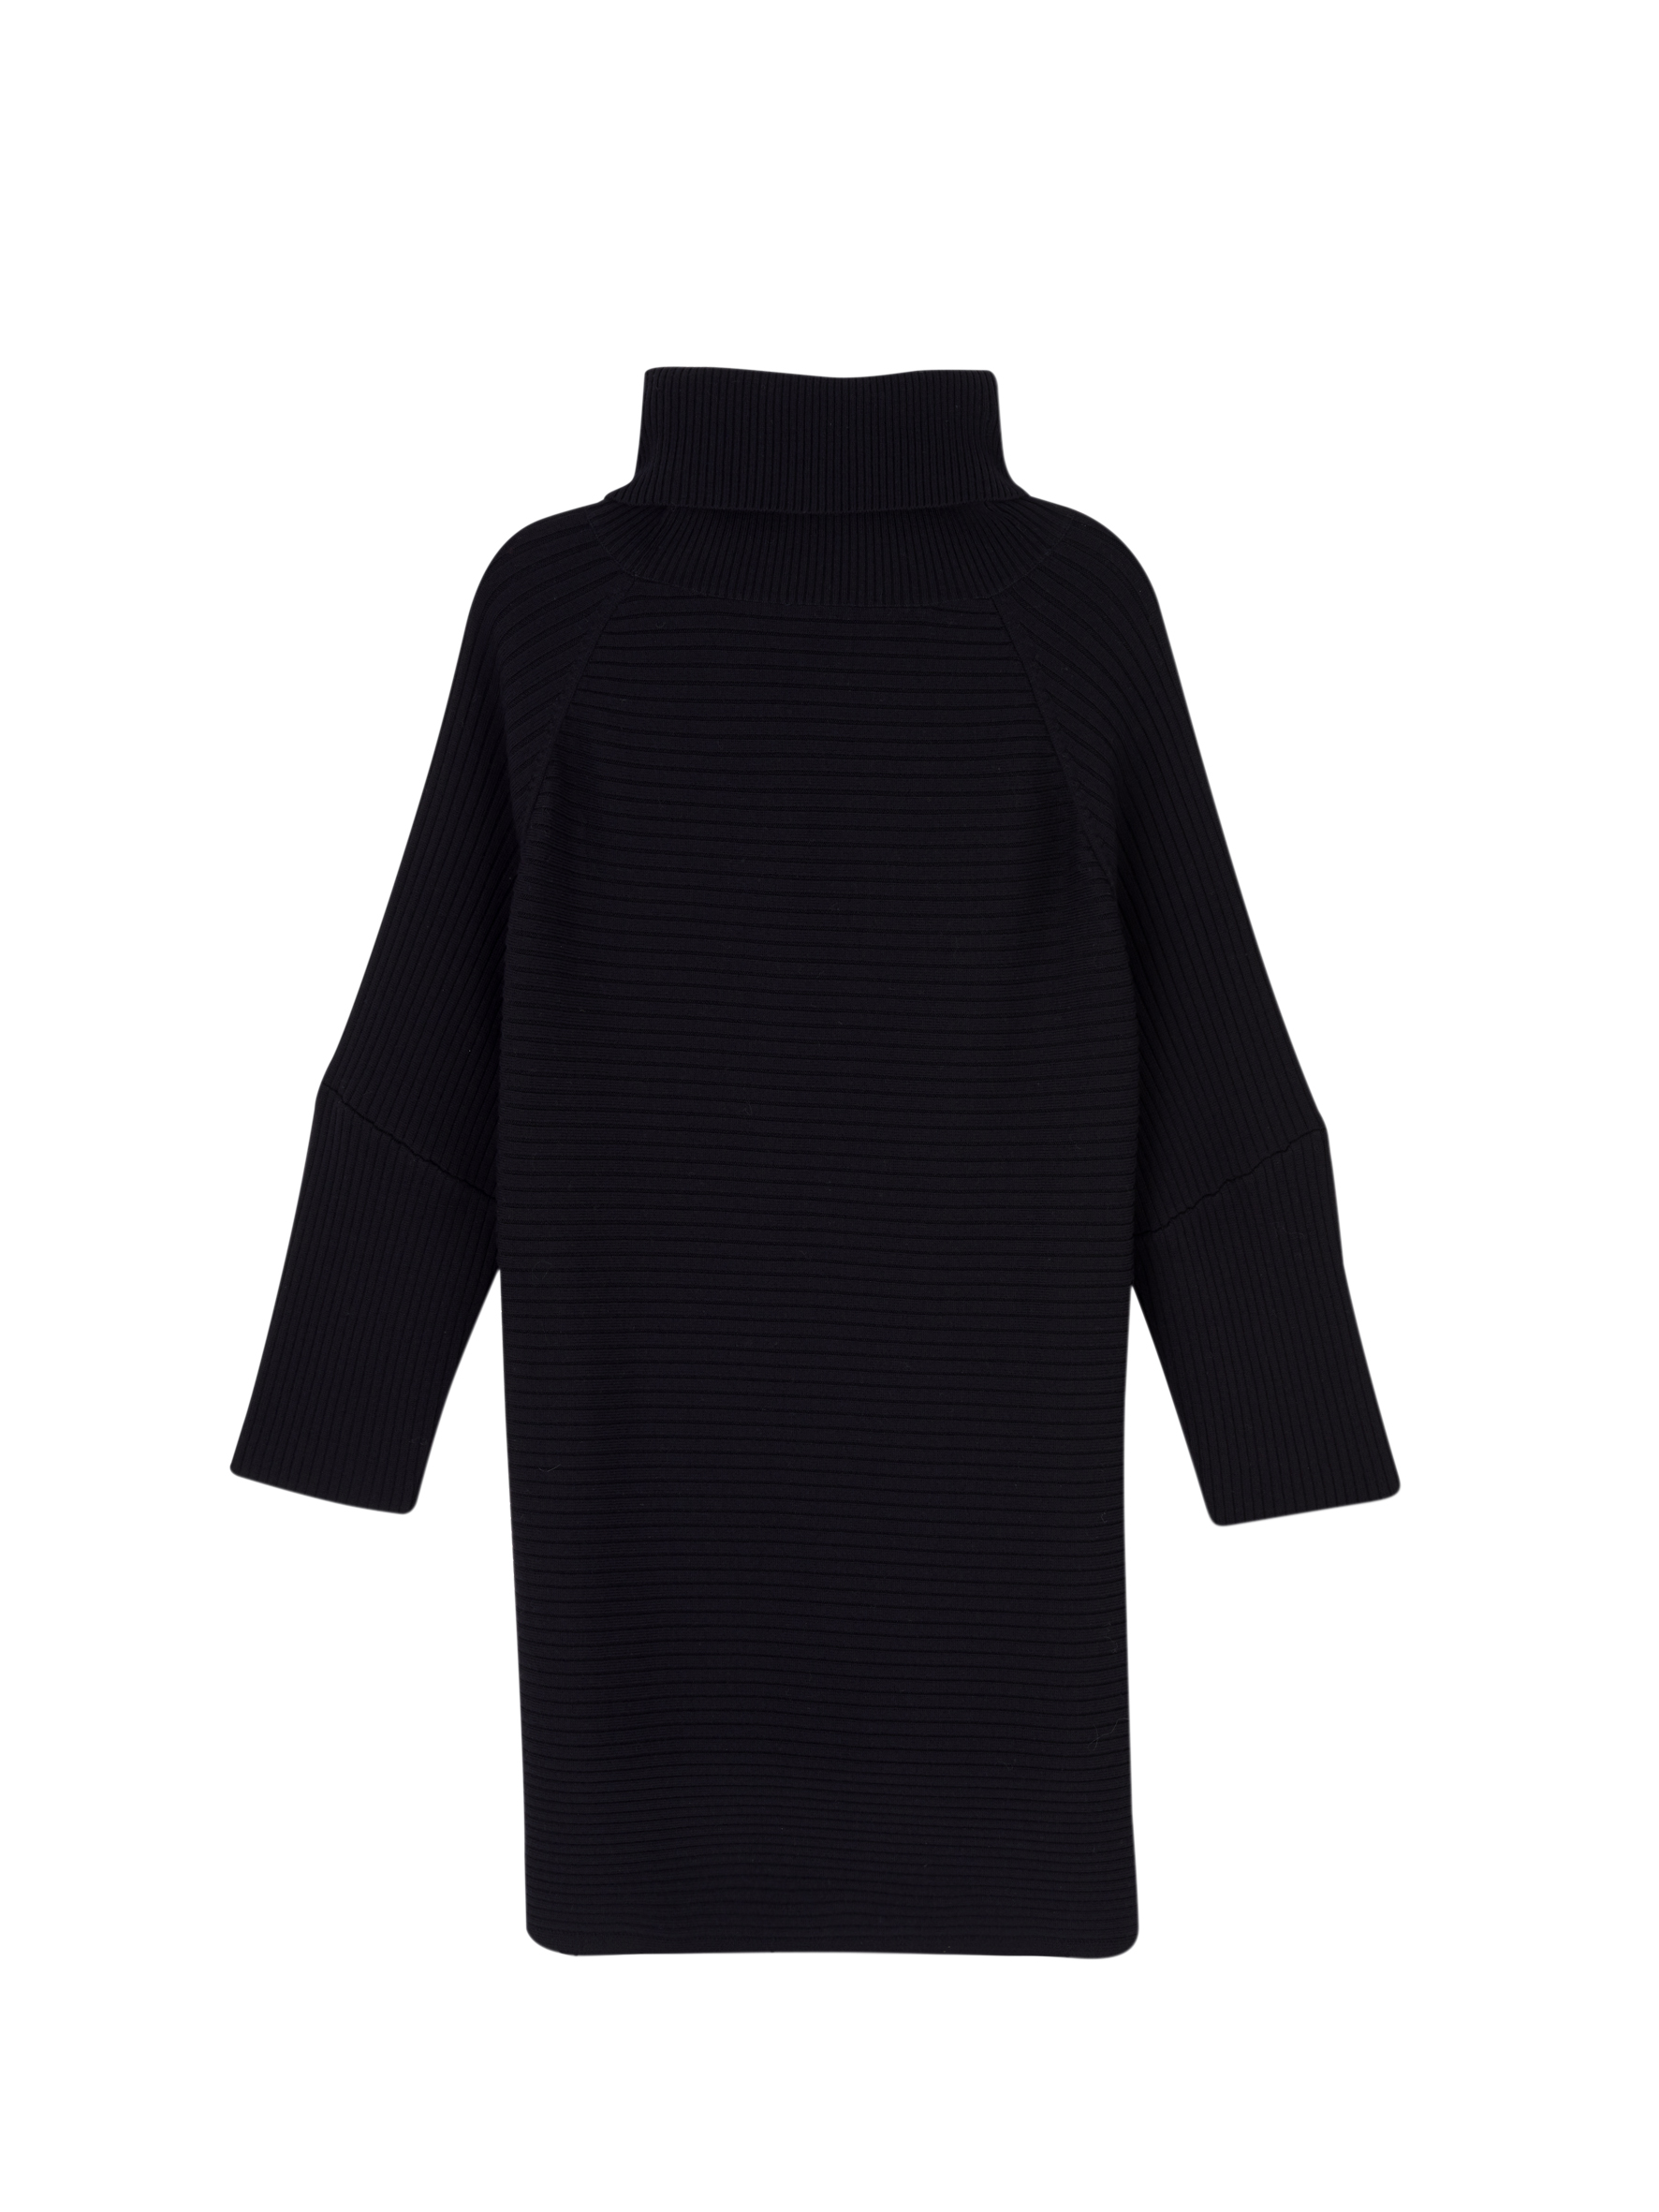 black_knitted_dress_$125.jpg